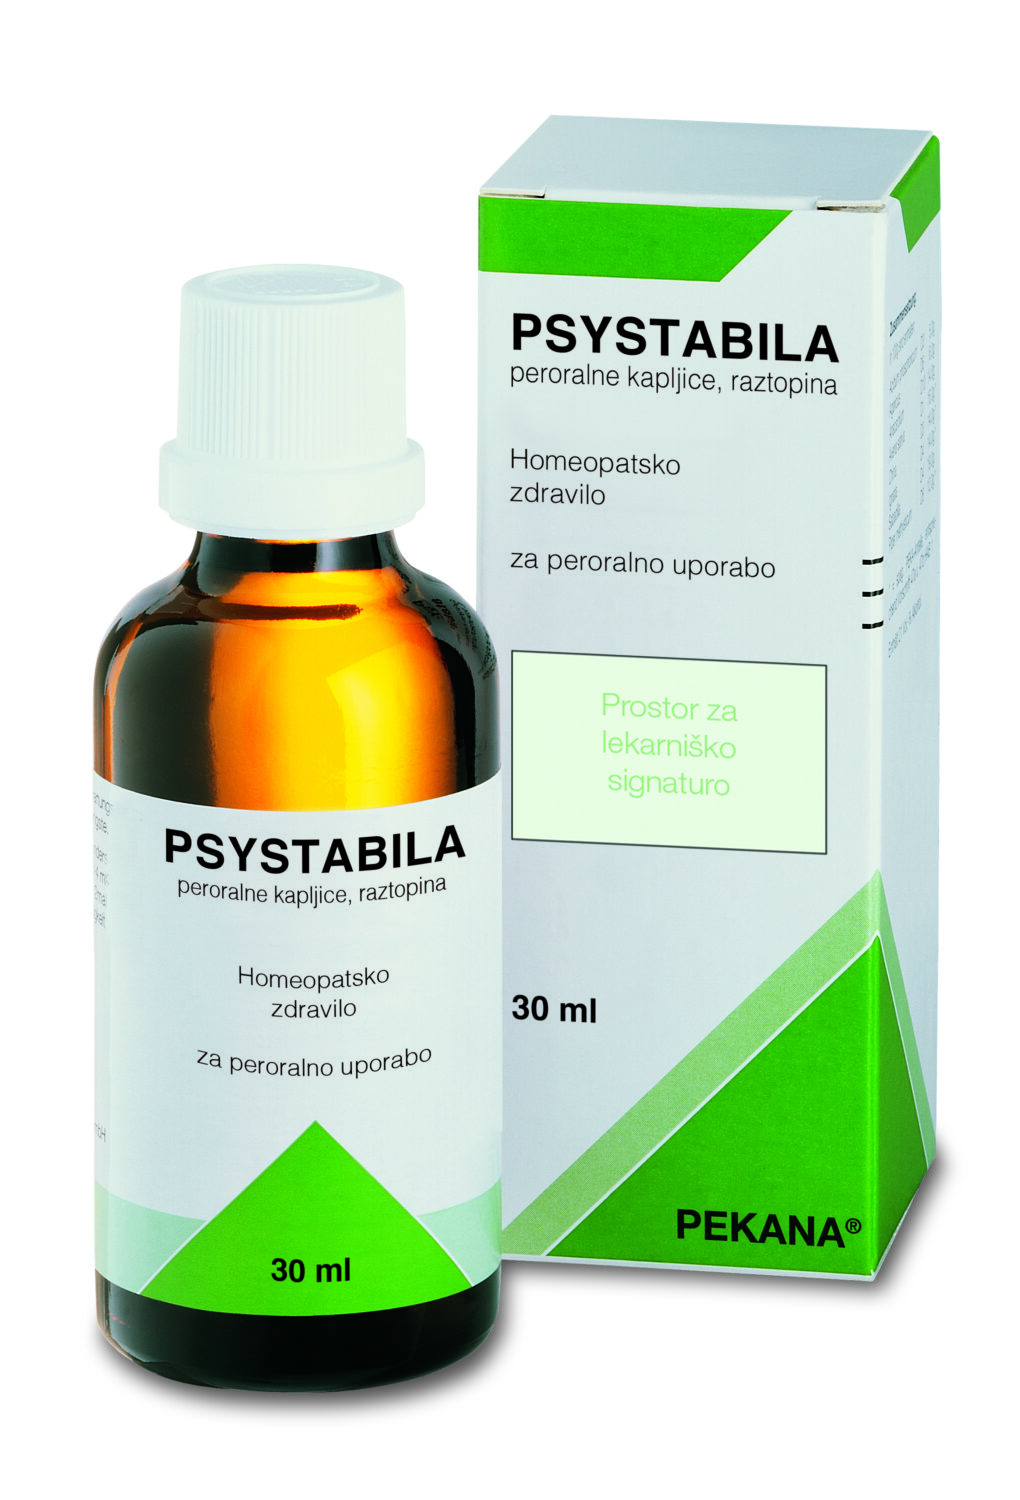 Psystabila Pekana – Homeopatsko zdravilo, peroralne kapljice (30 ml)